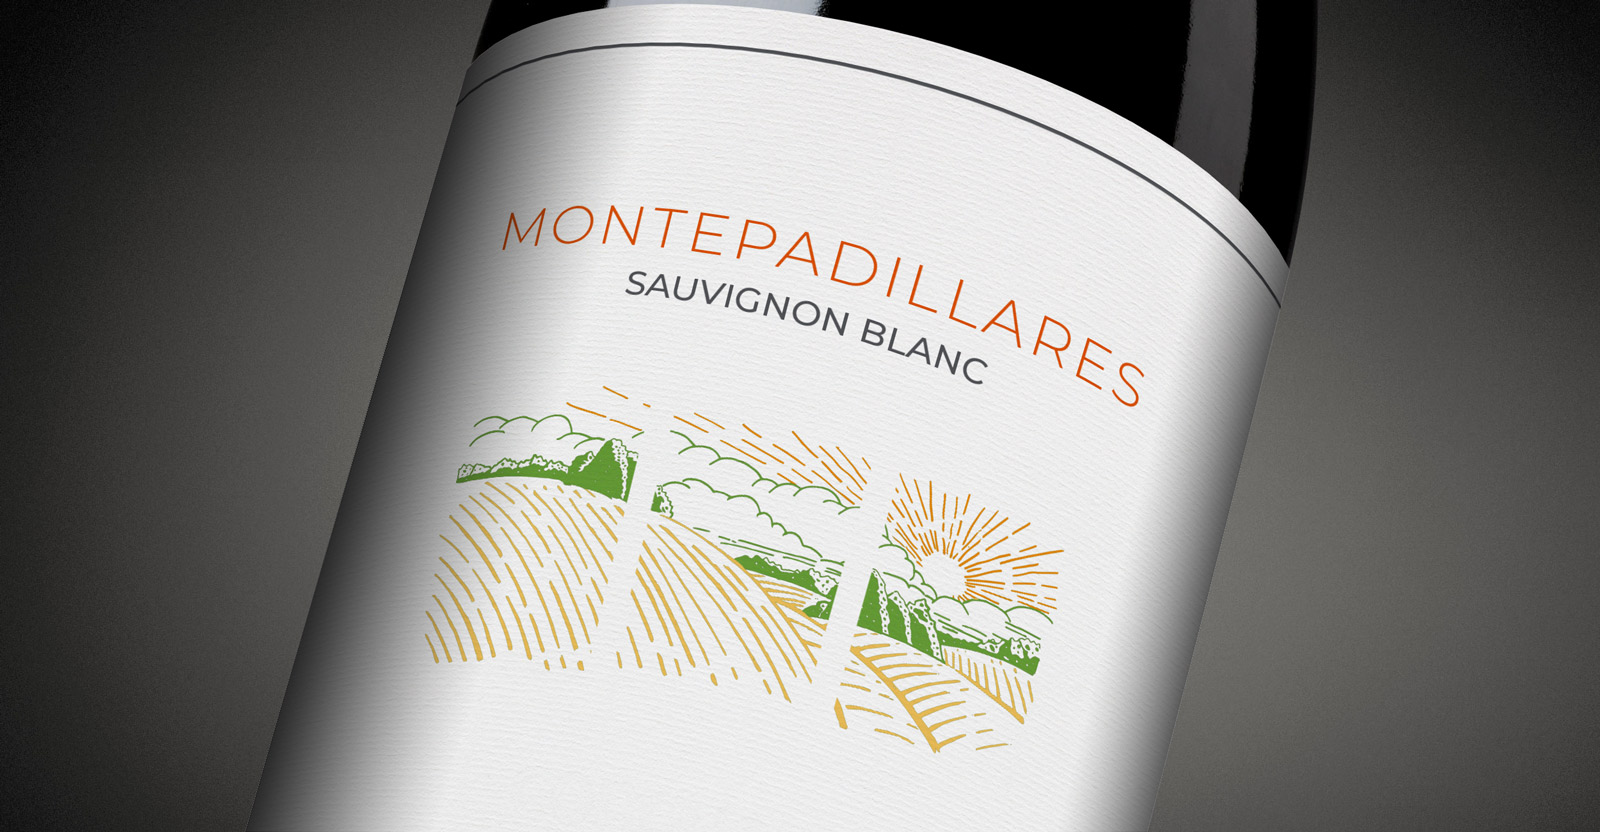 Diseño gráfico y creativo de etiquetas formato sleeve y packaging de vino para MONTEPADILLARES